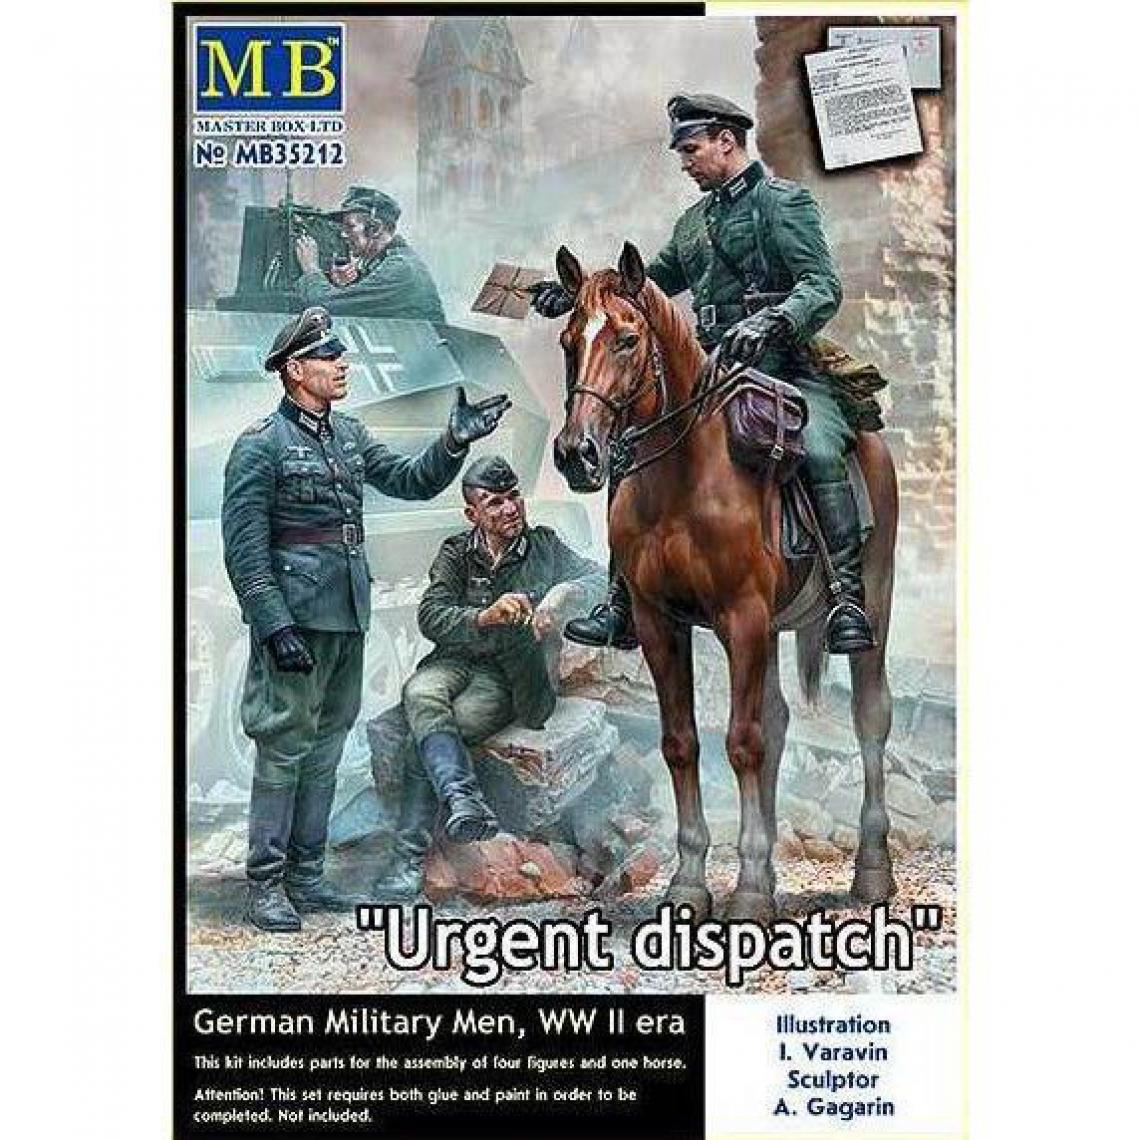 Master Box - Urgent Dispatch. German Military Men, WWII era - 1:35e - Master Box Ltd. - Accessoires et pièces